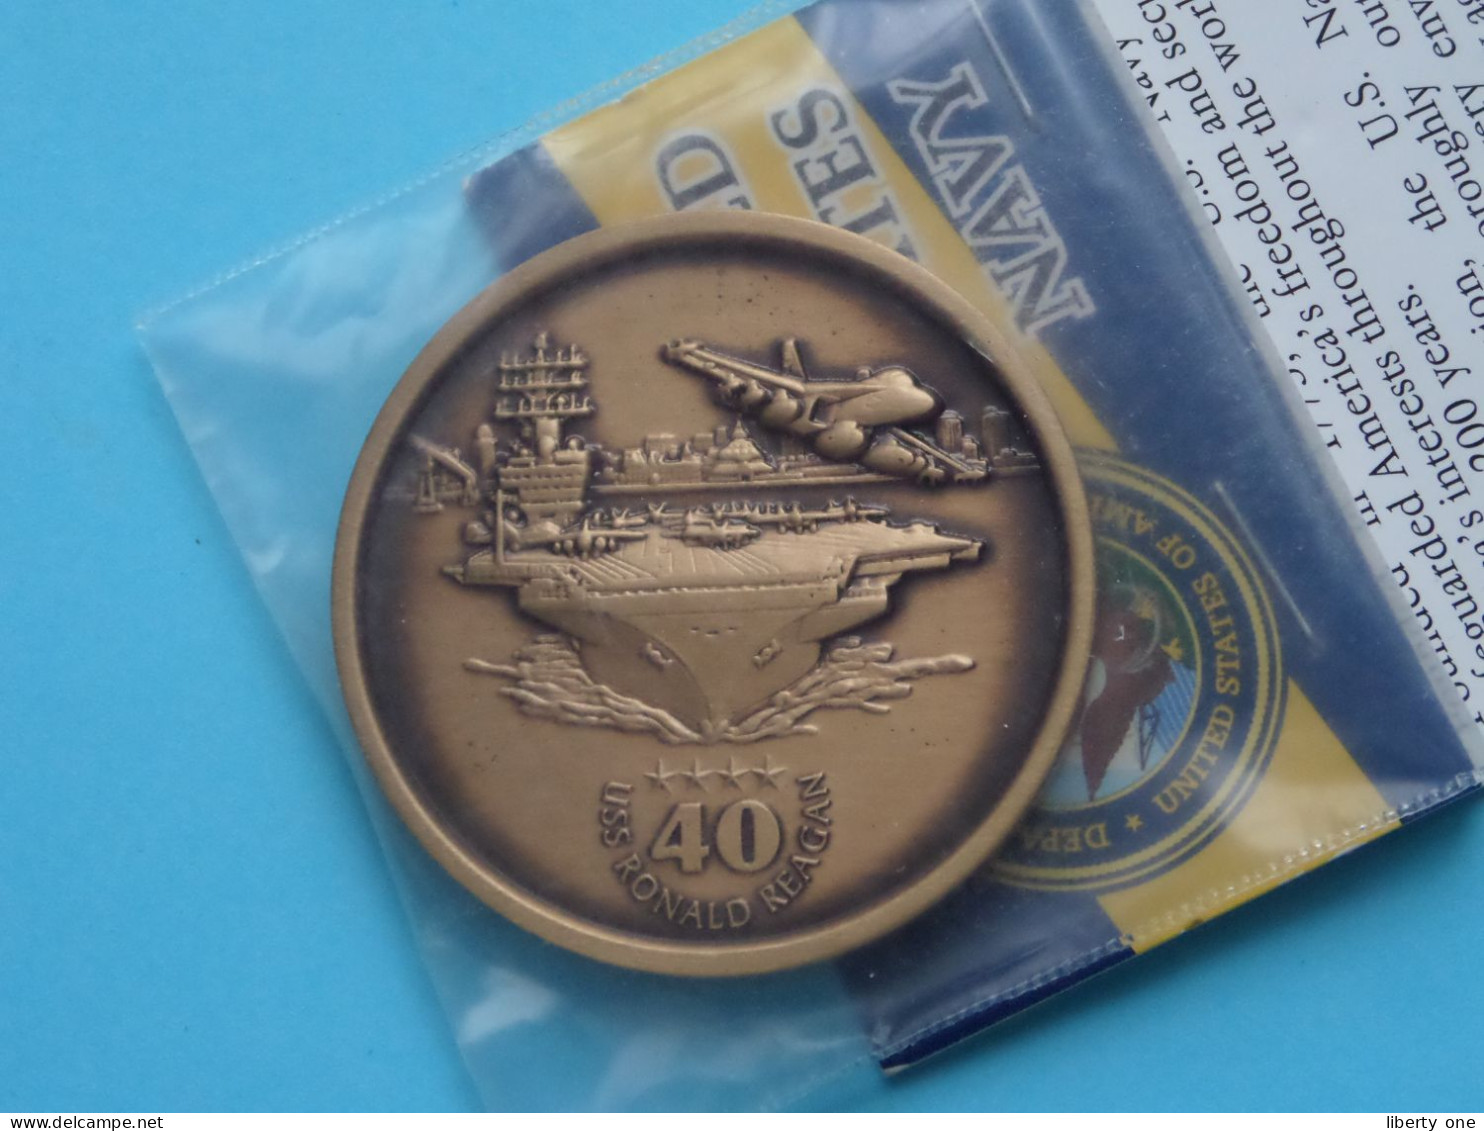 United States Navy - CVN76 " USS RONALD REAGAN " ( UNC > See SCANS ) 47 Mm. : +/- 60 Gr. ( NWT Mint Auburn WA )! - Pièces écrasées (Elongated Coins)